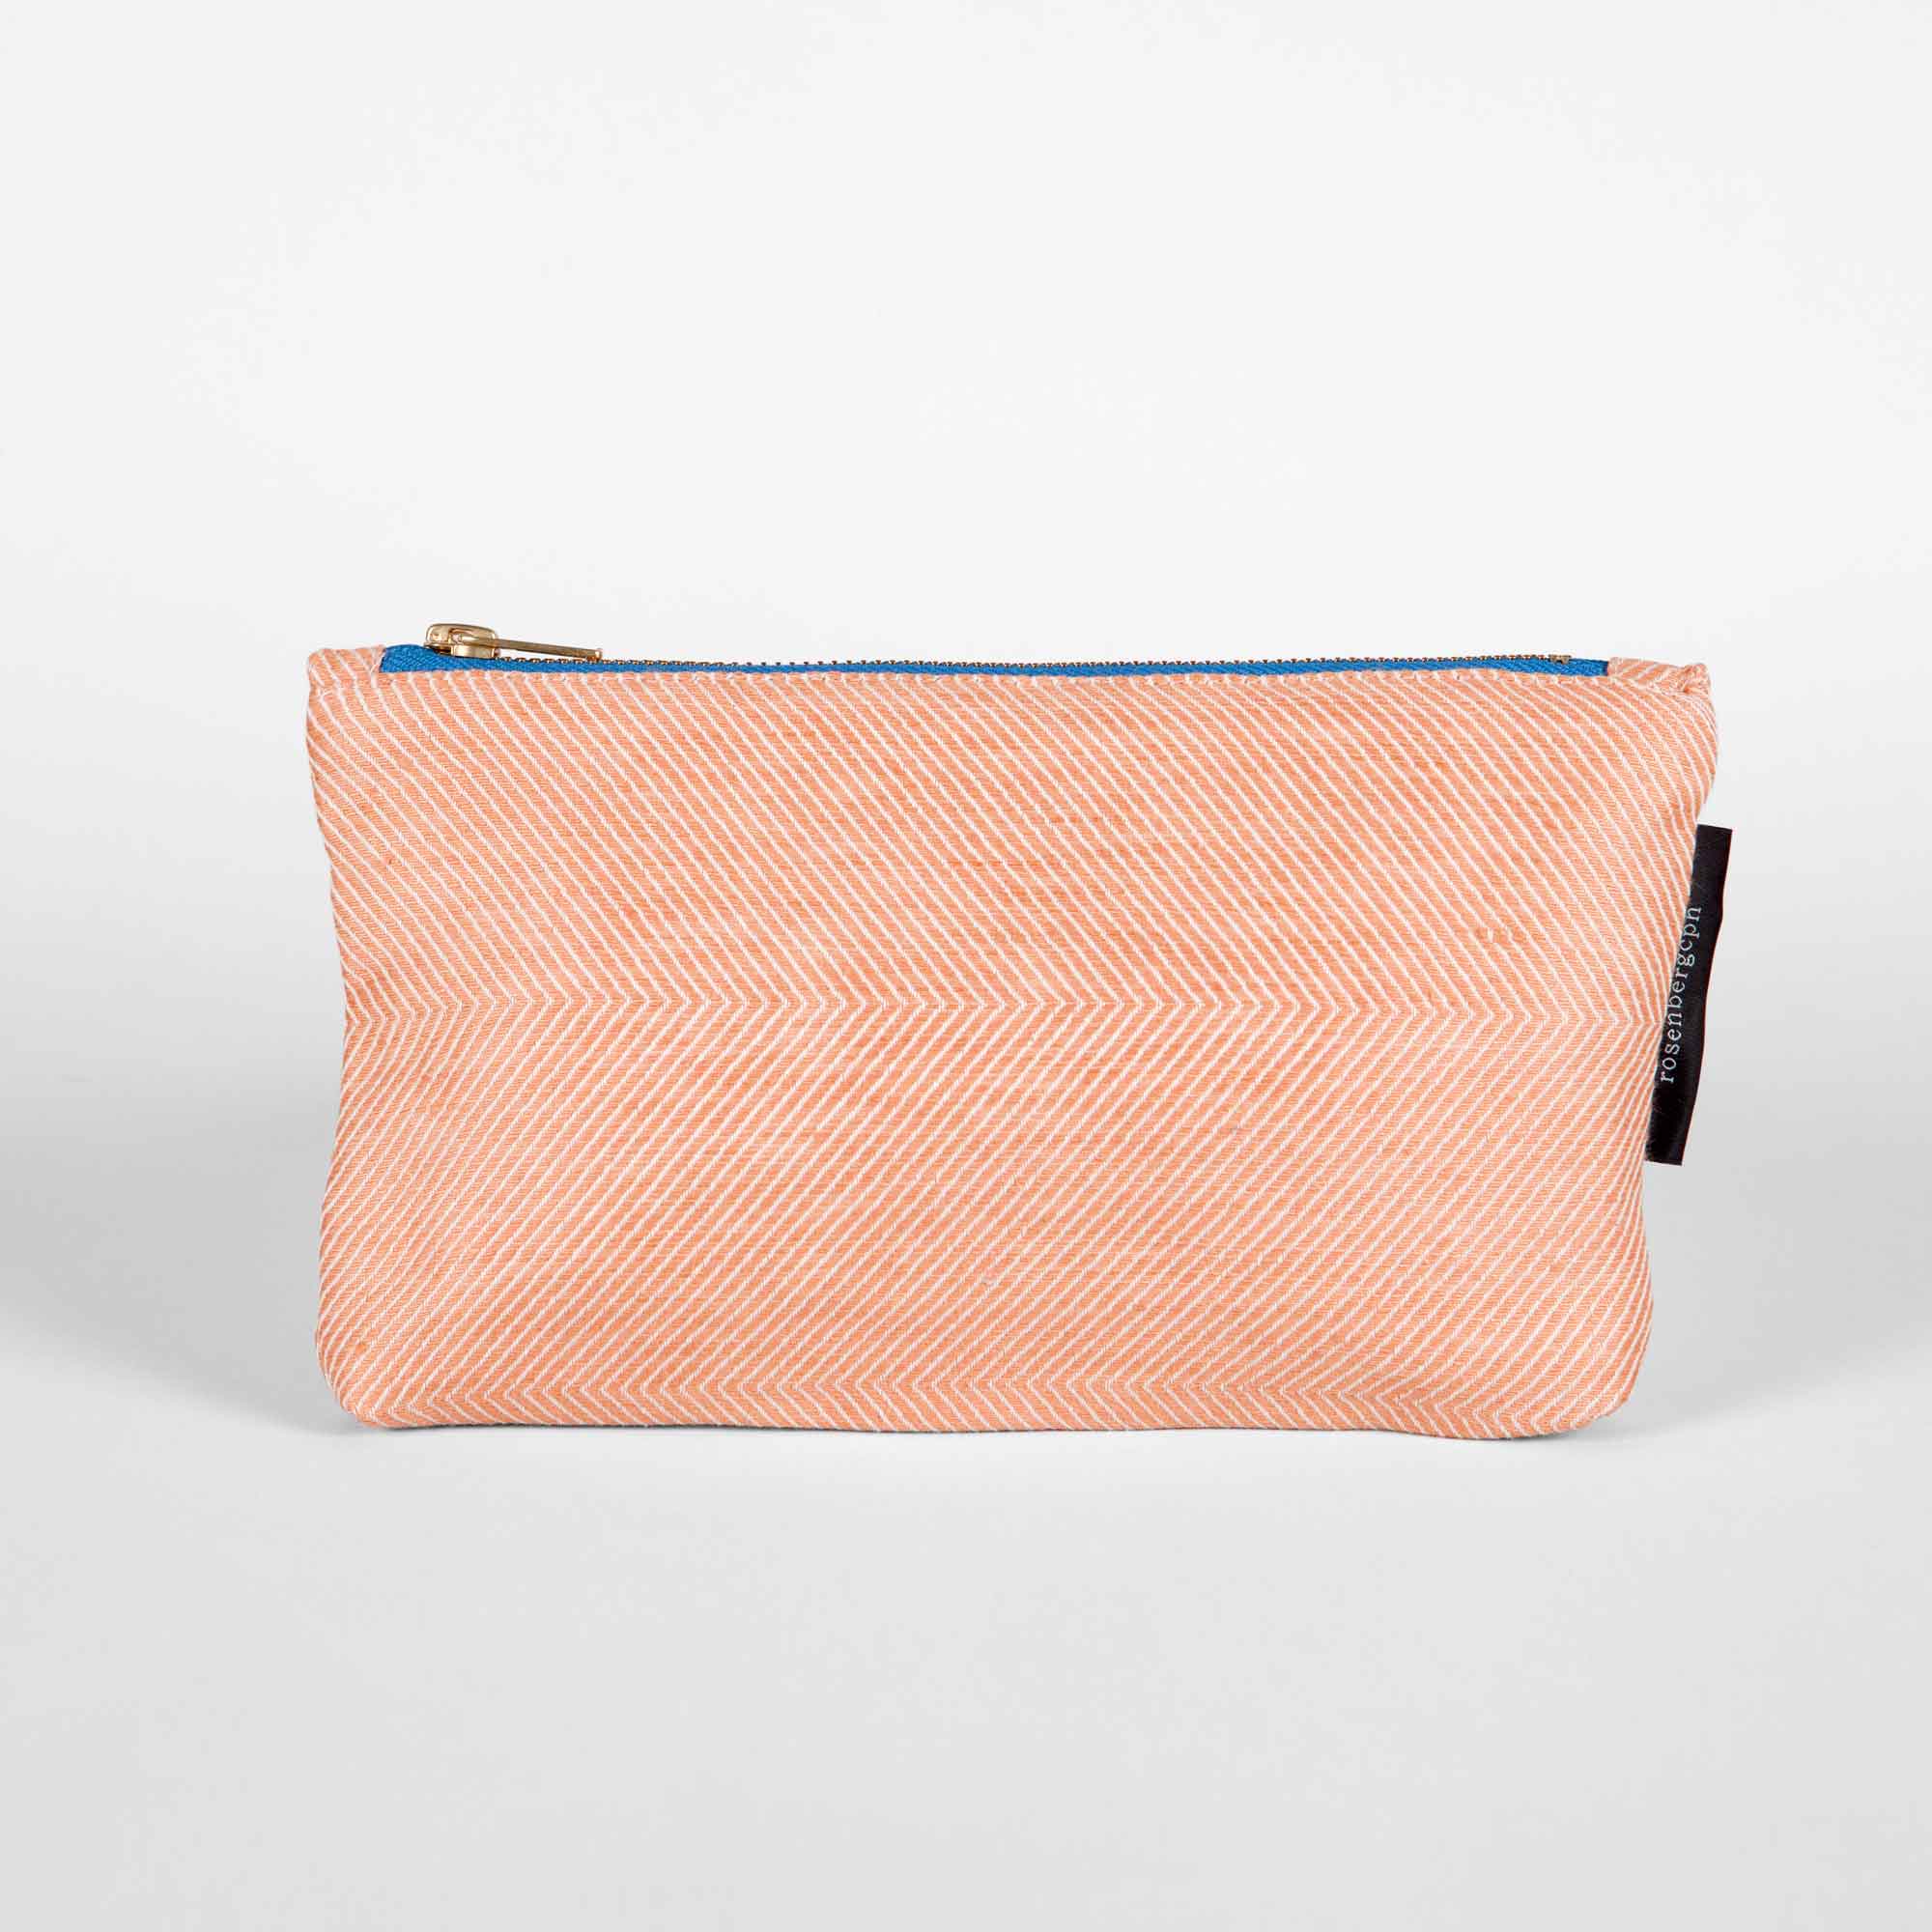 Shift linen/cotton purse, coral, design Anne Rosenberg, RosenbergCph